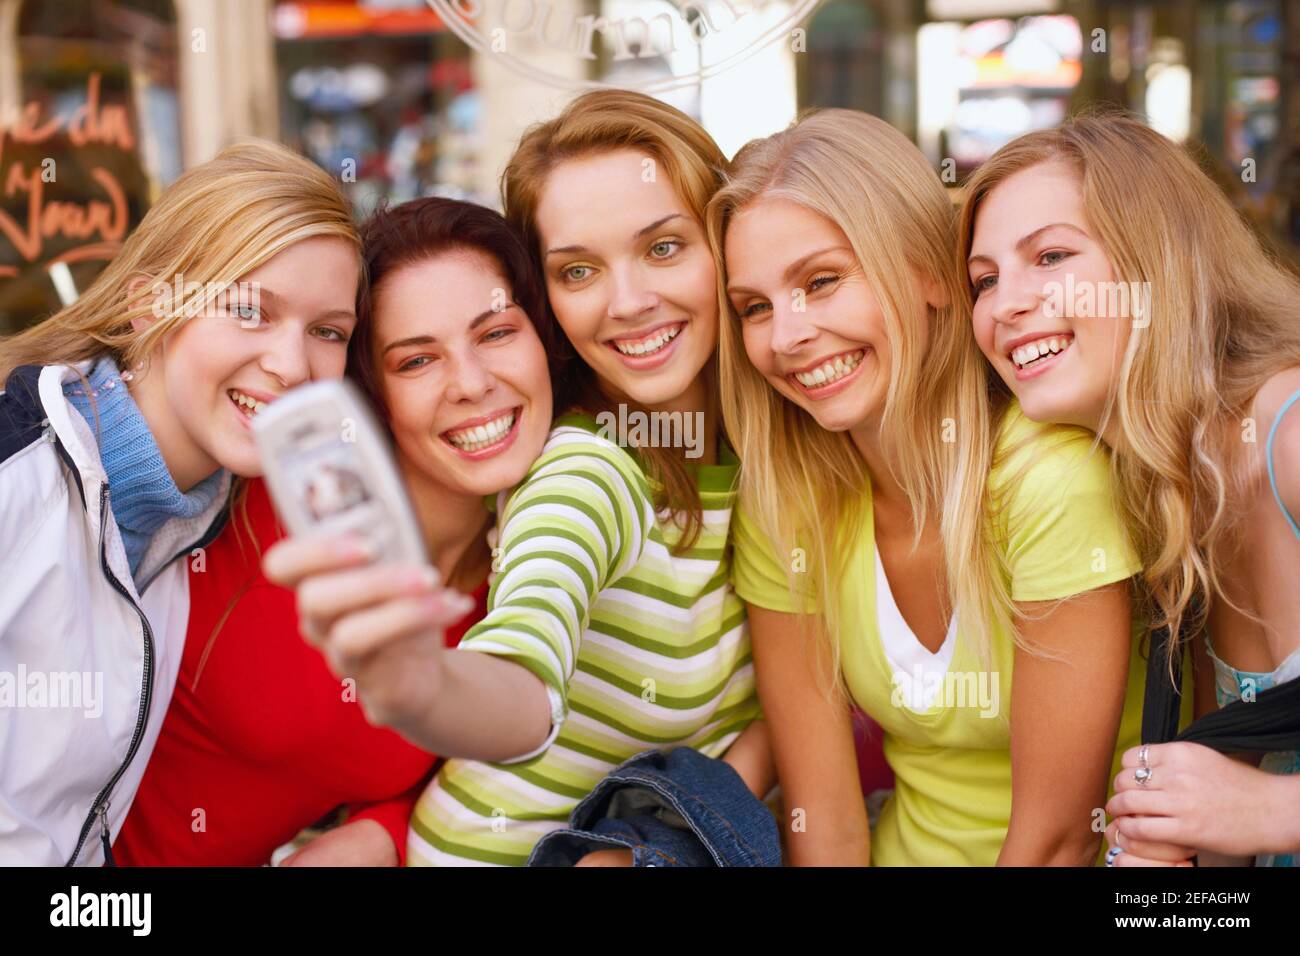 Cinco mujeres jóvenes tomando una fotografía de sí mismas Foto de stock